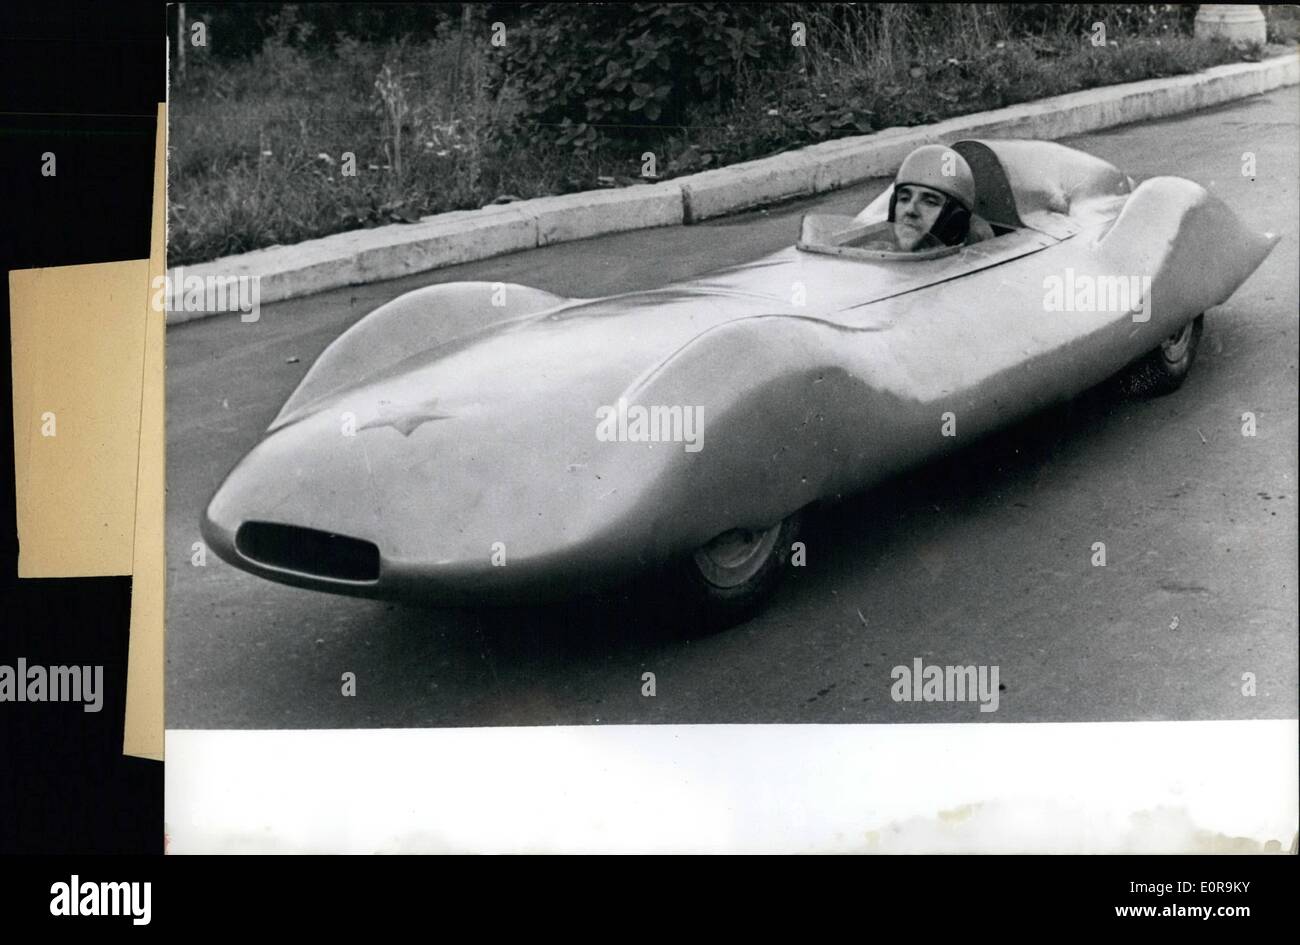 Septembre 09, 1958 - un monde nouveau record du monde. dans la classe des voitures jusqu'à 250 Kubik zentimeter, le pilote russe Aleyai Amrrosenkov Banque D'Images